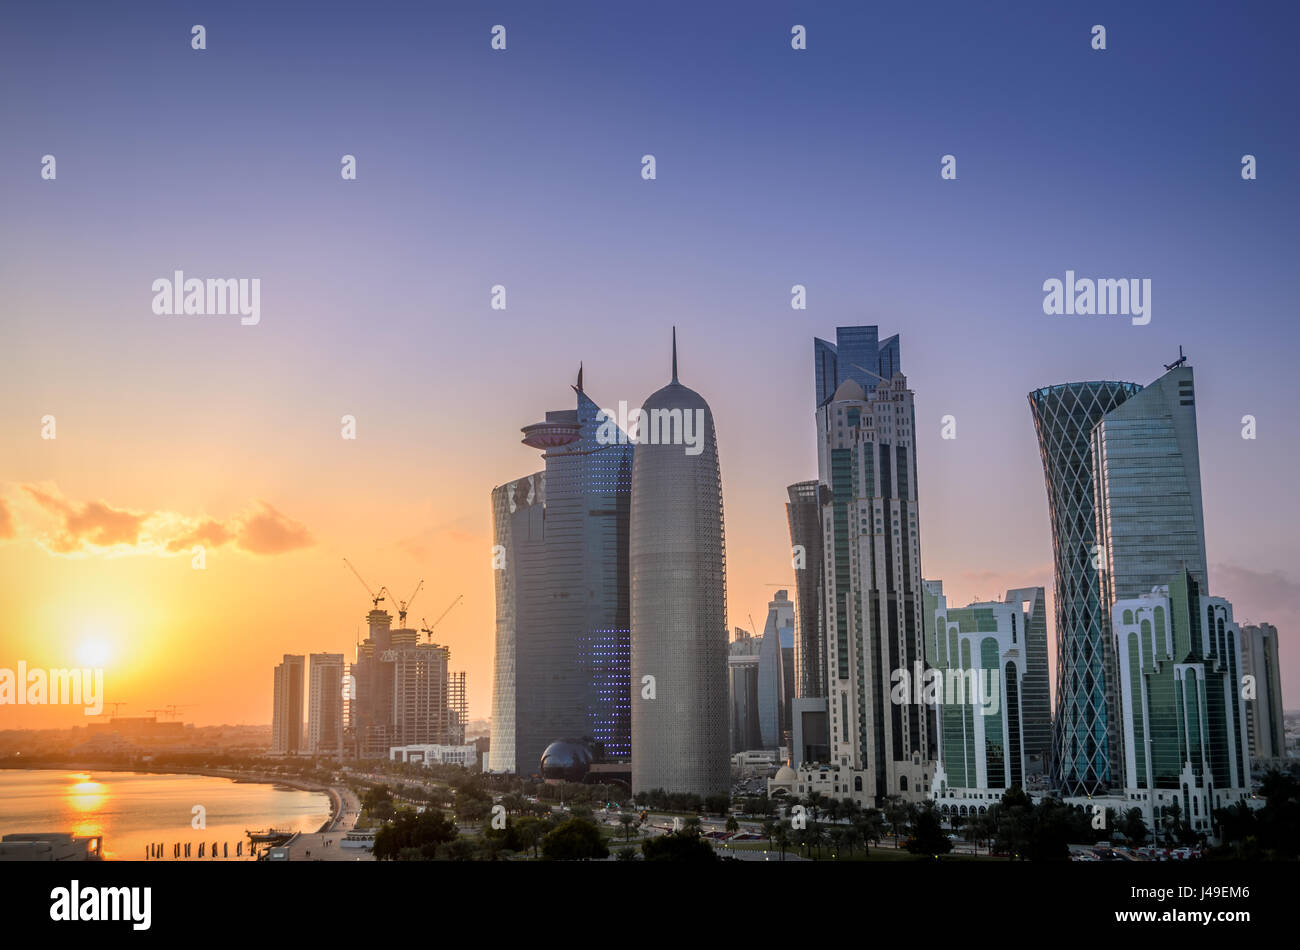 Les gratte-ciel dans l'horizon du centre commercial de Doha, capitale du Qatar, pays du golfe Arabique au coucher du soleil. Banque D'Images